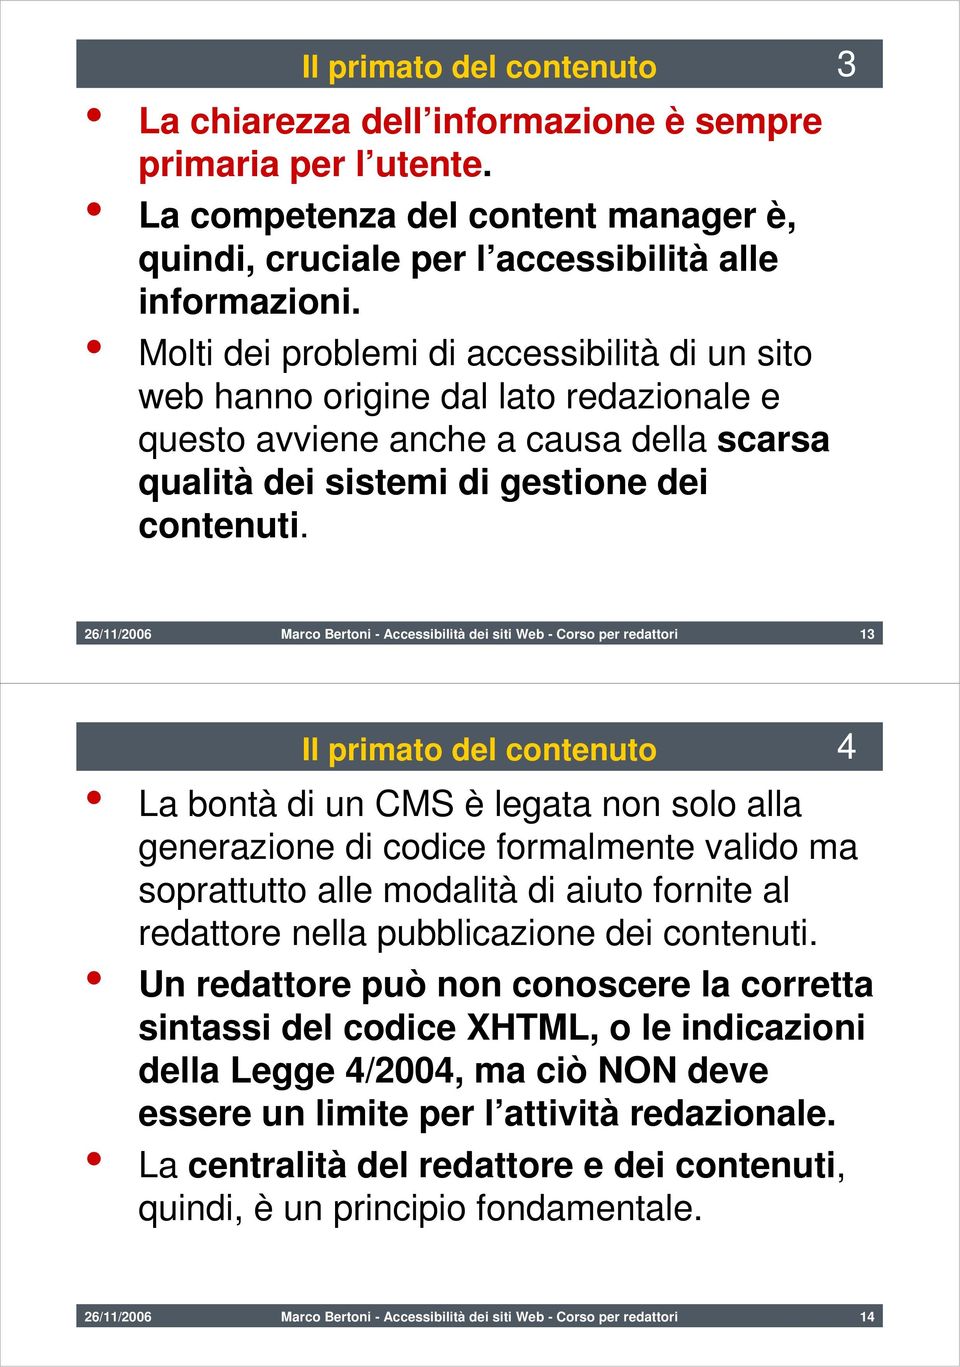 26/11/2006 Marco Bertoni - Accessibilità dei siti Web - Corso per redattori 13 Il primato del contenuto 4 La bontà di un CMS è legata non solo alla generazione di codice formalmente valido ma